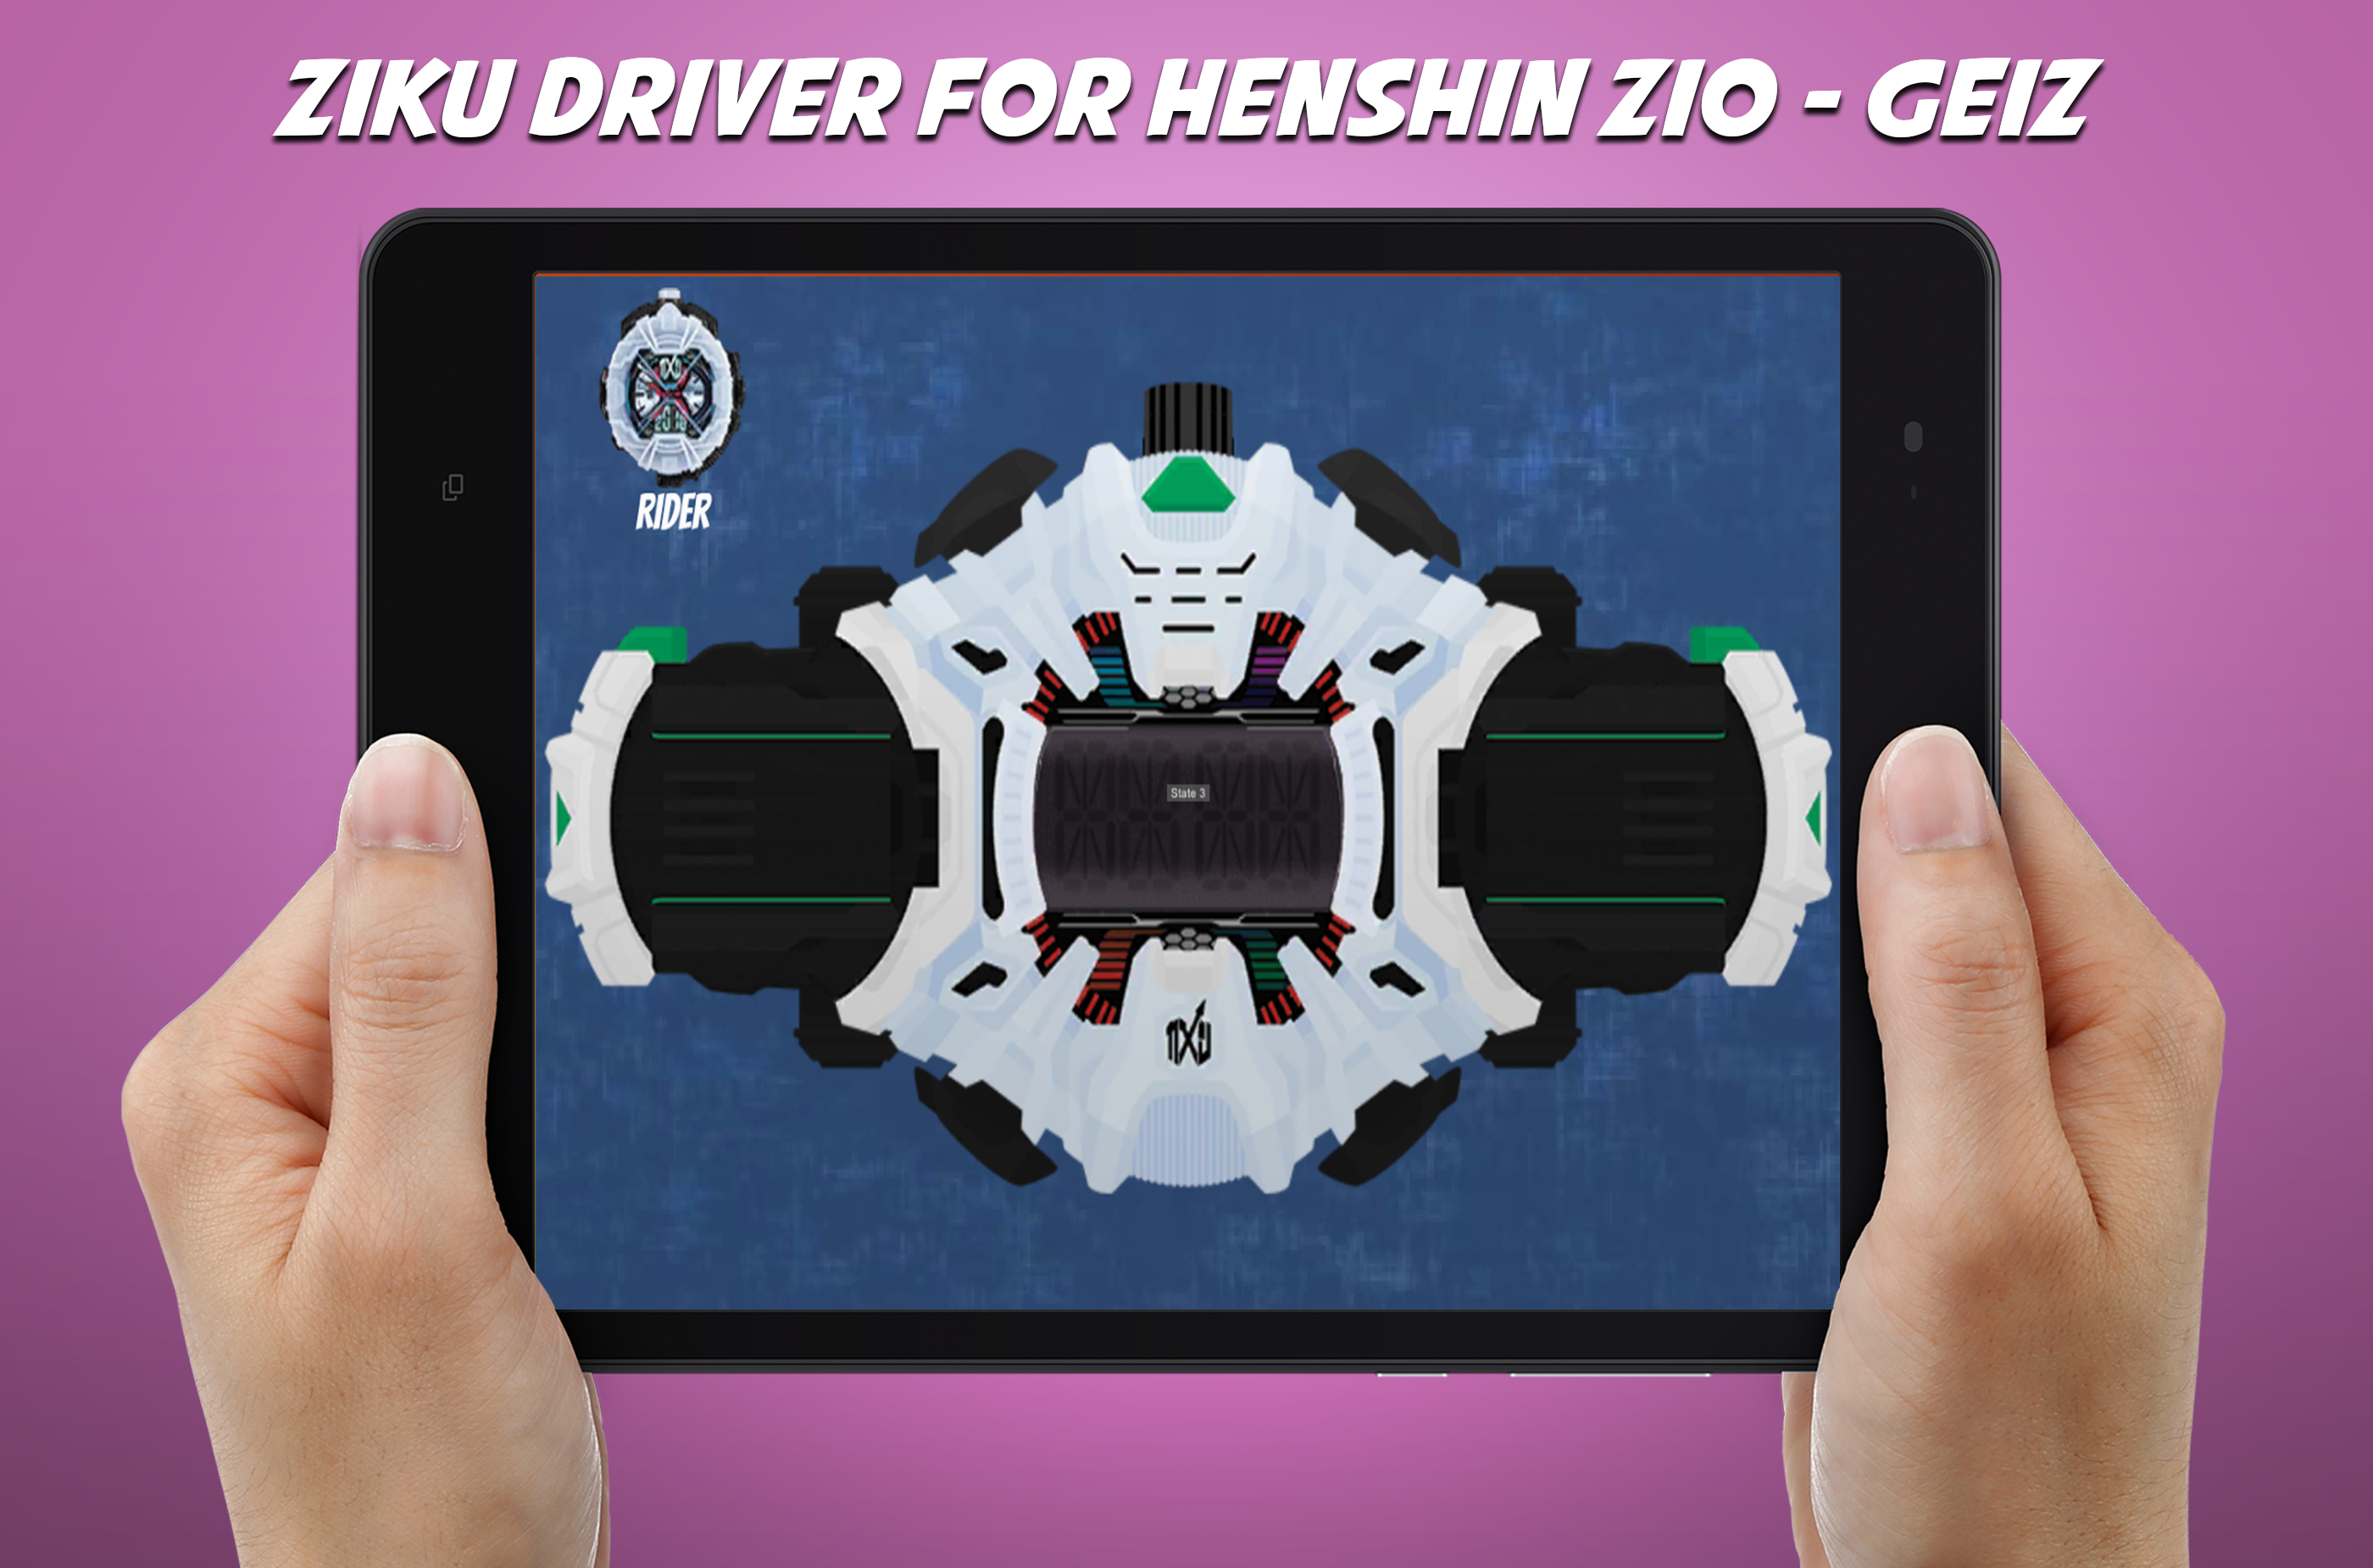 Screenshot 1 of DX Ziku Treiber für Henshin Gürtel Zio - Geiz 2.0